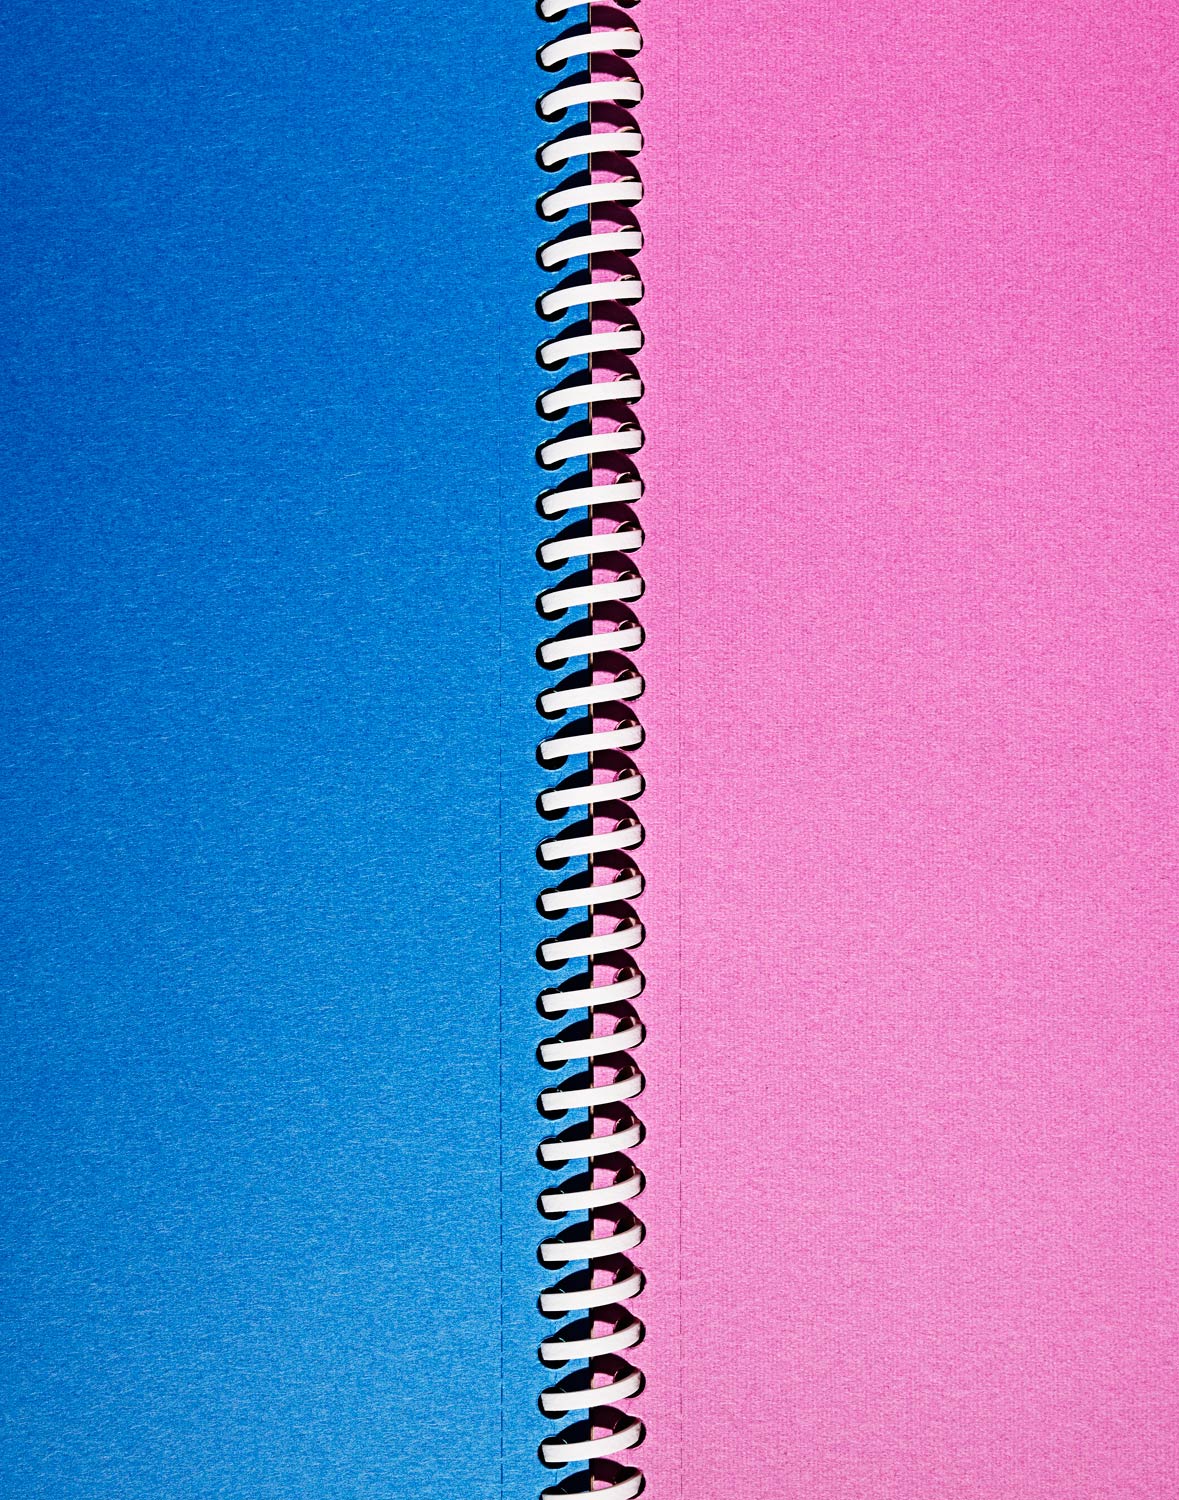 Blue--Pink-Spiral-Page.jpg